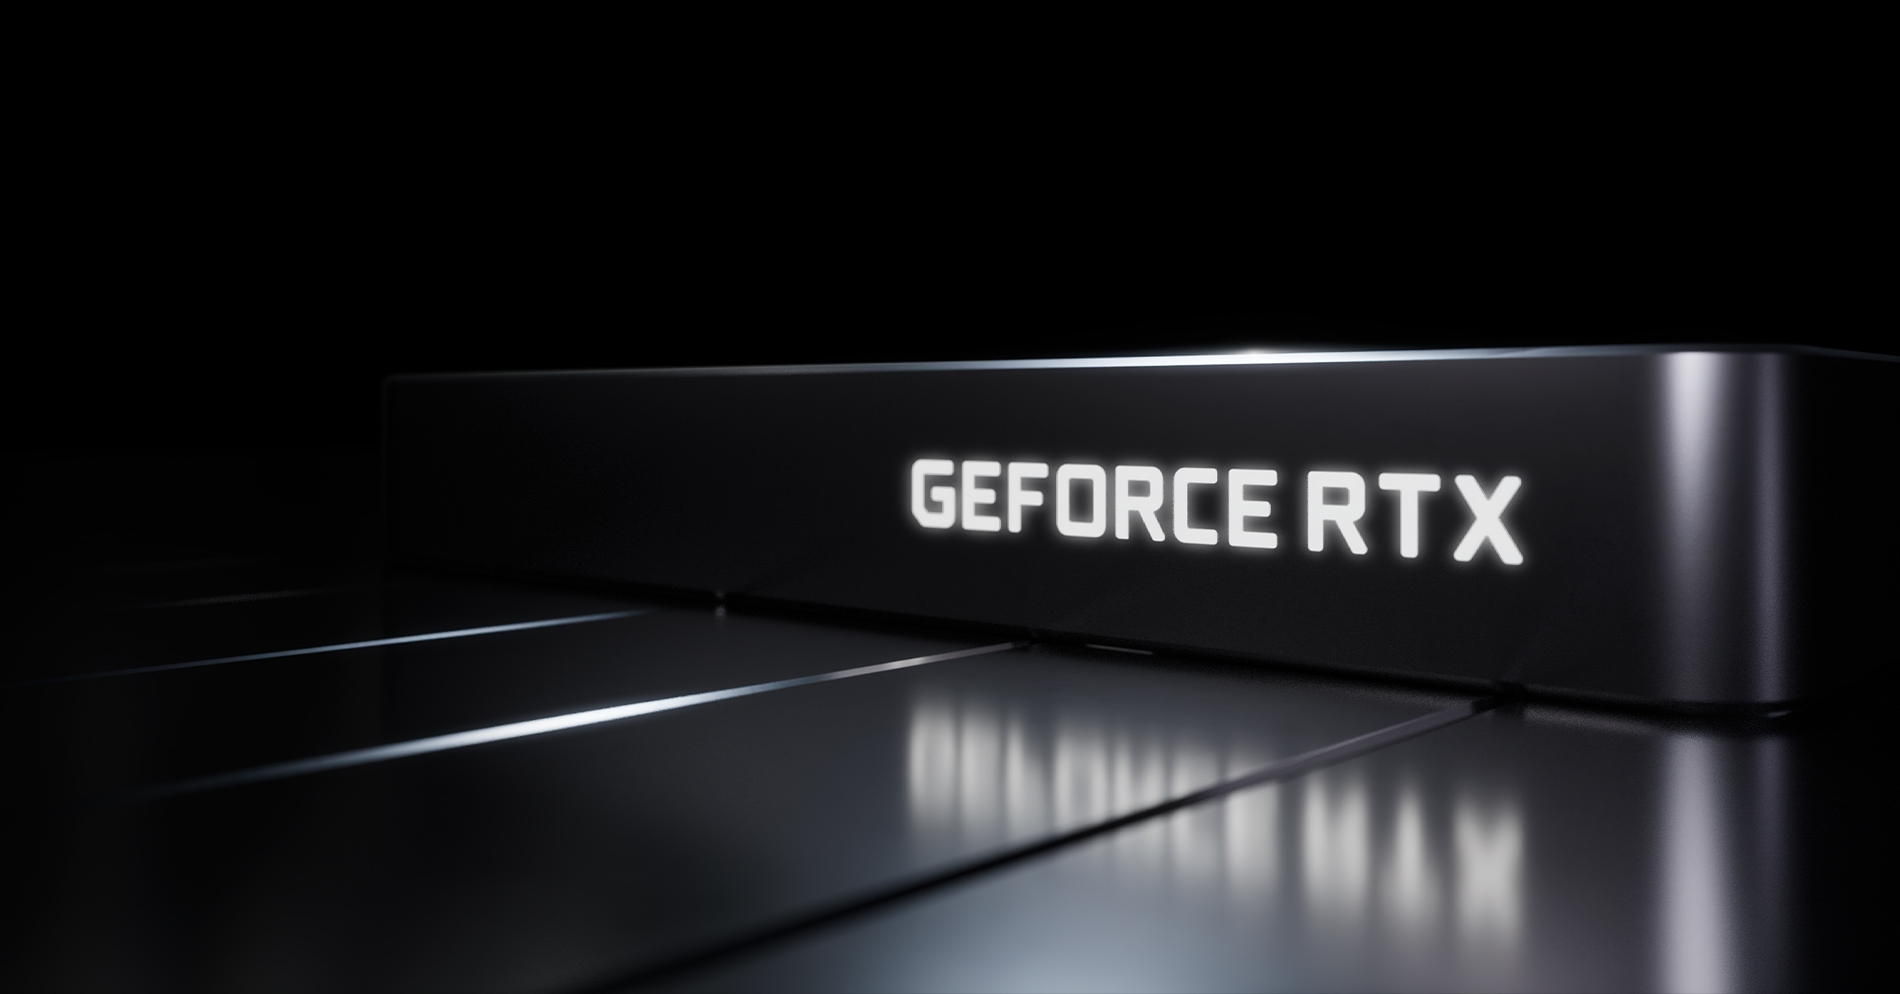 Immagine pubblicata in relazione al seguente contenuto: On line le specifiche aggiornate della video card GeForce RTX 4080 di NVIDIA | Nome immagine: news33538_NVIDIA-GeForce-RTX-4080_Specifications_1.jpg